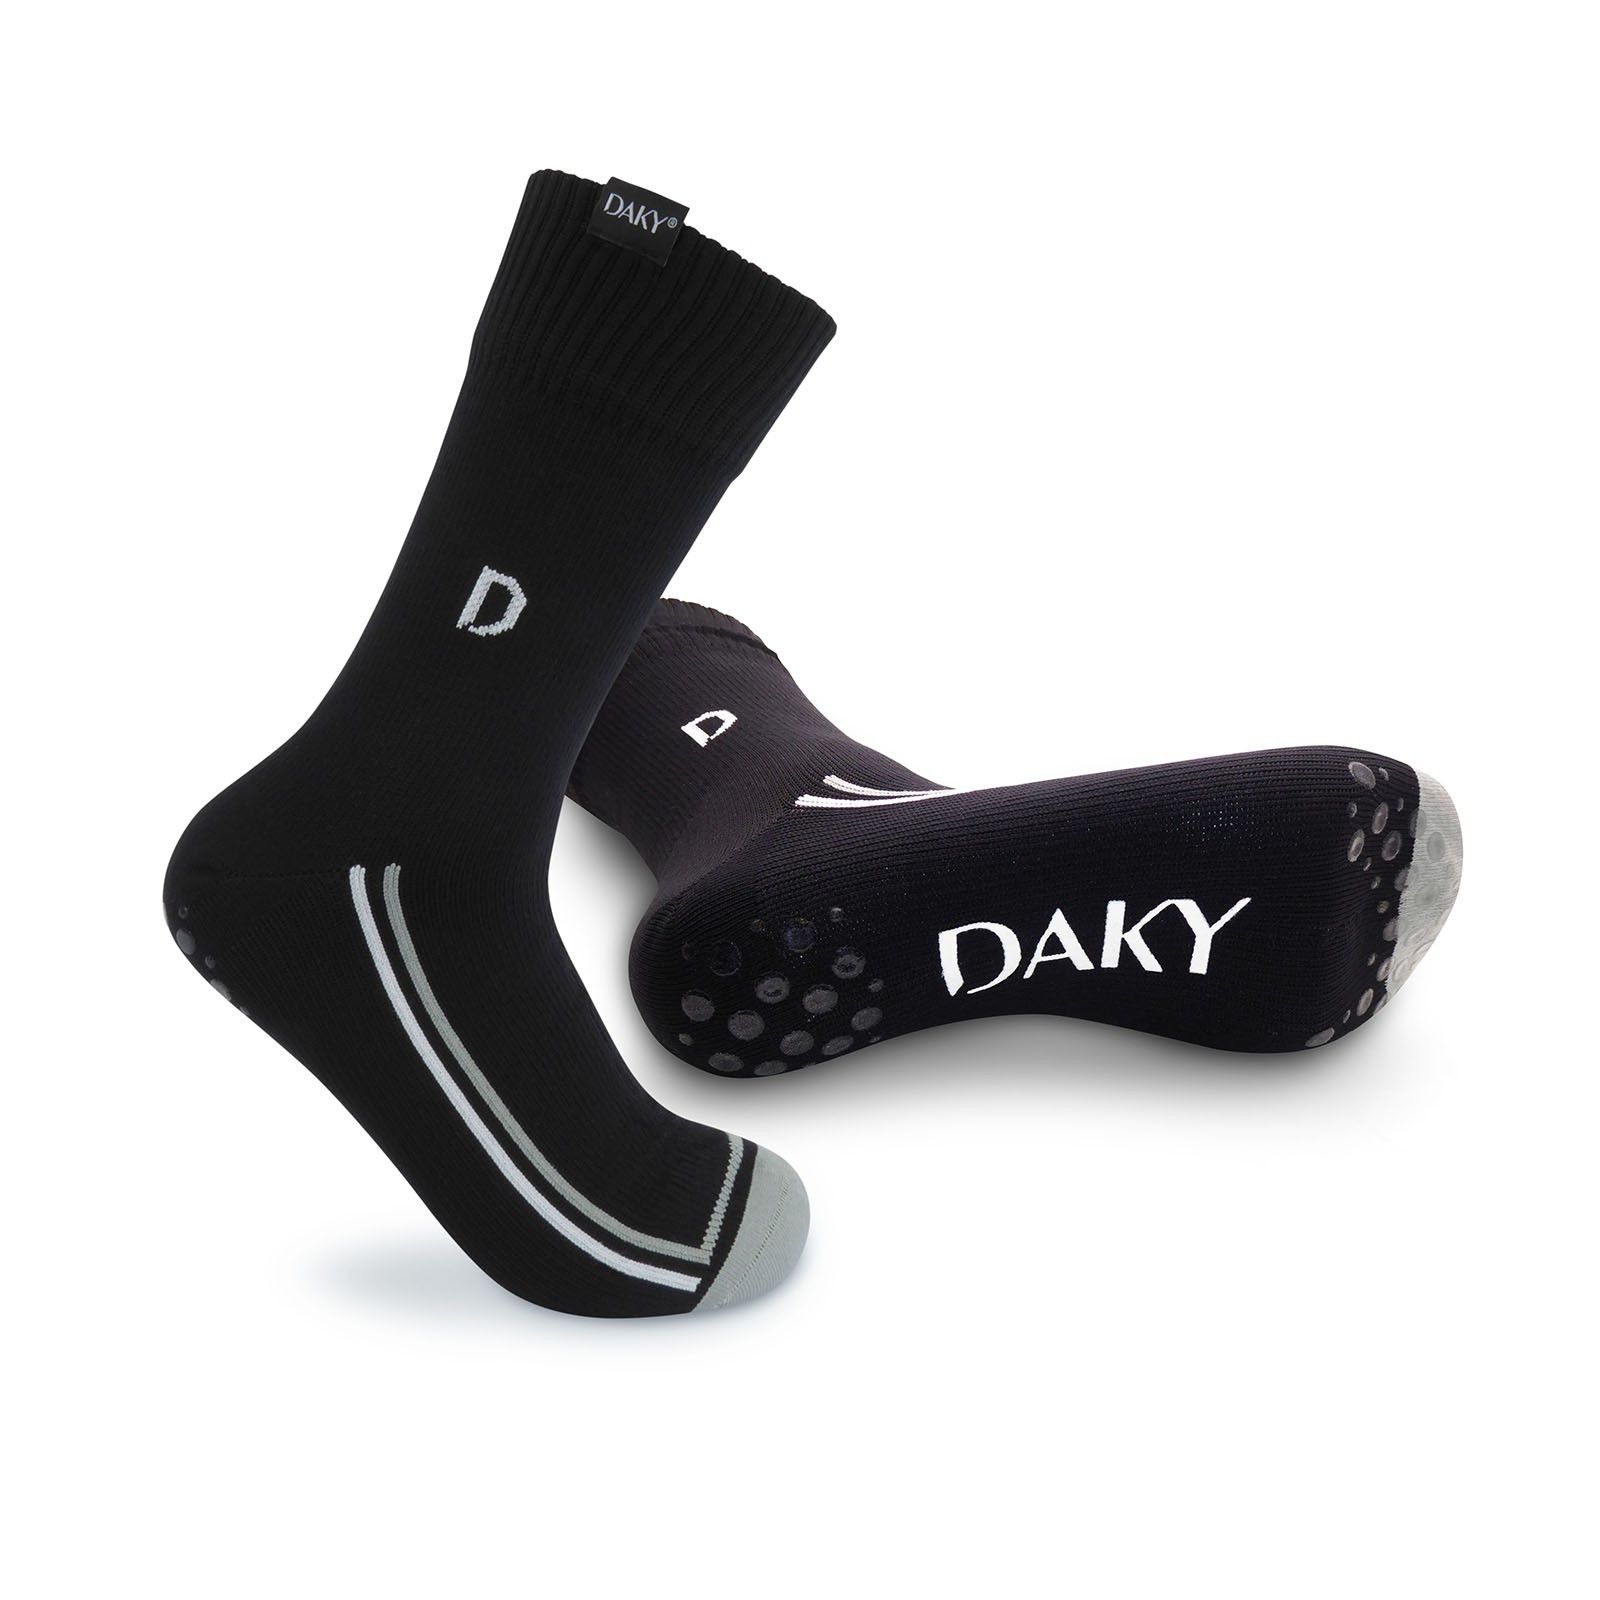 DAKY (SKYLINE X) – WUDU (MASAH) Compliant & Waterproof Socks